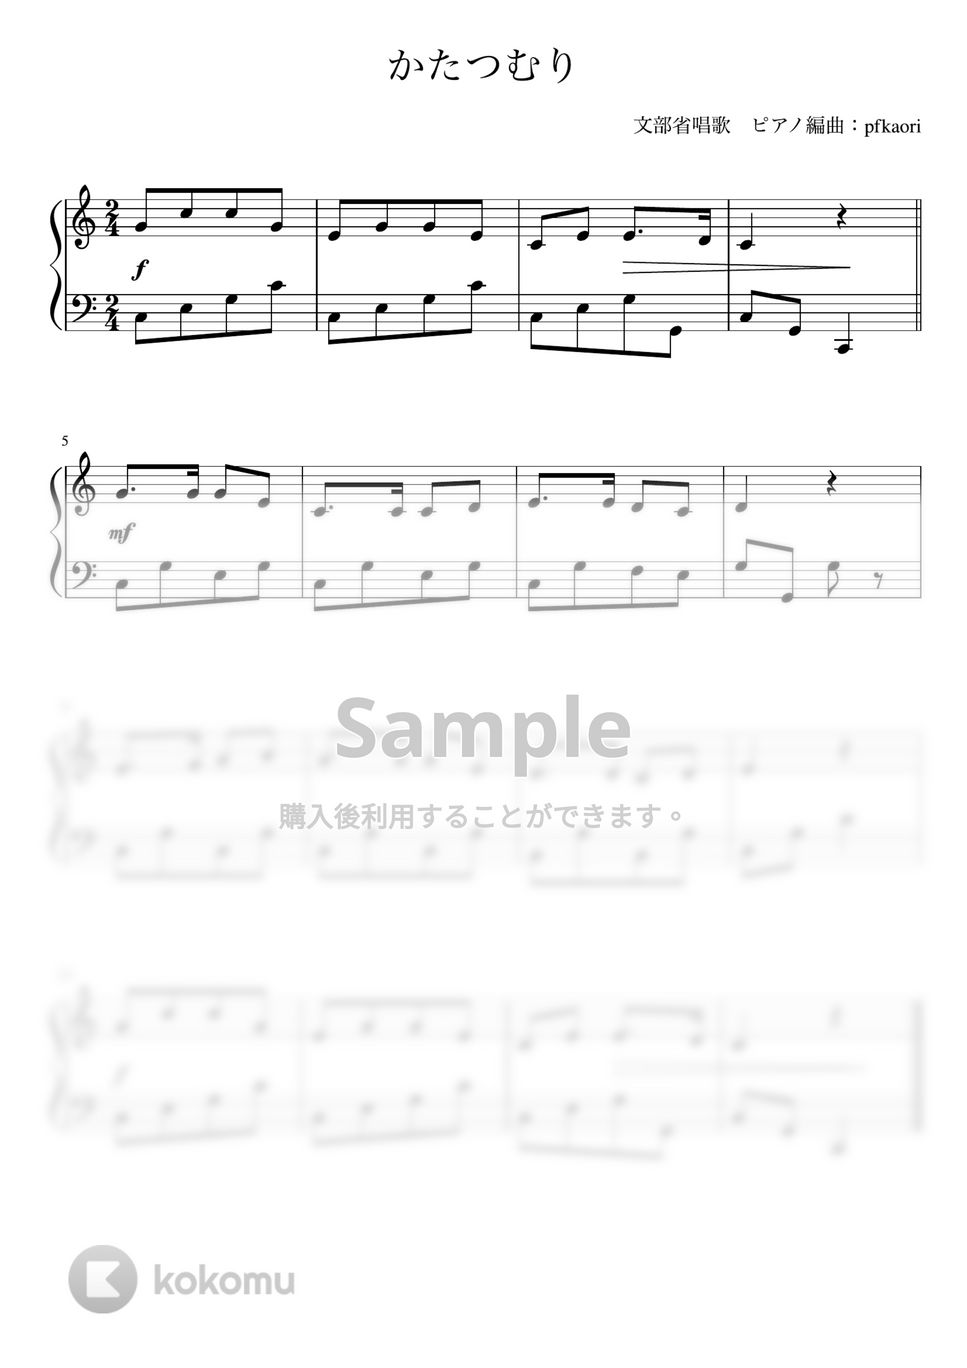 かたつむり (Cdur/ピアノソロ初級) by pfkaori